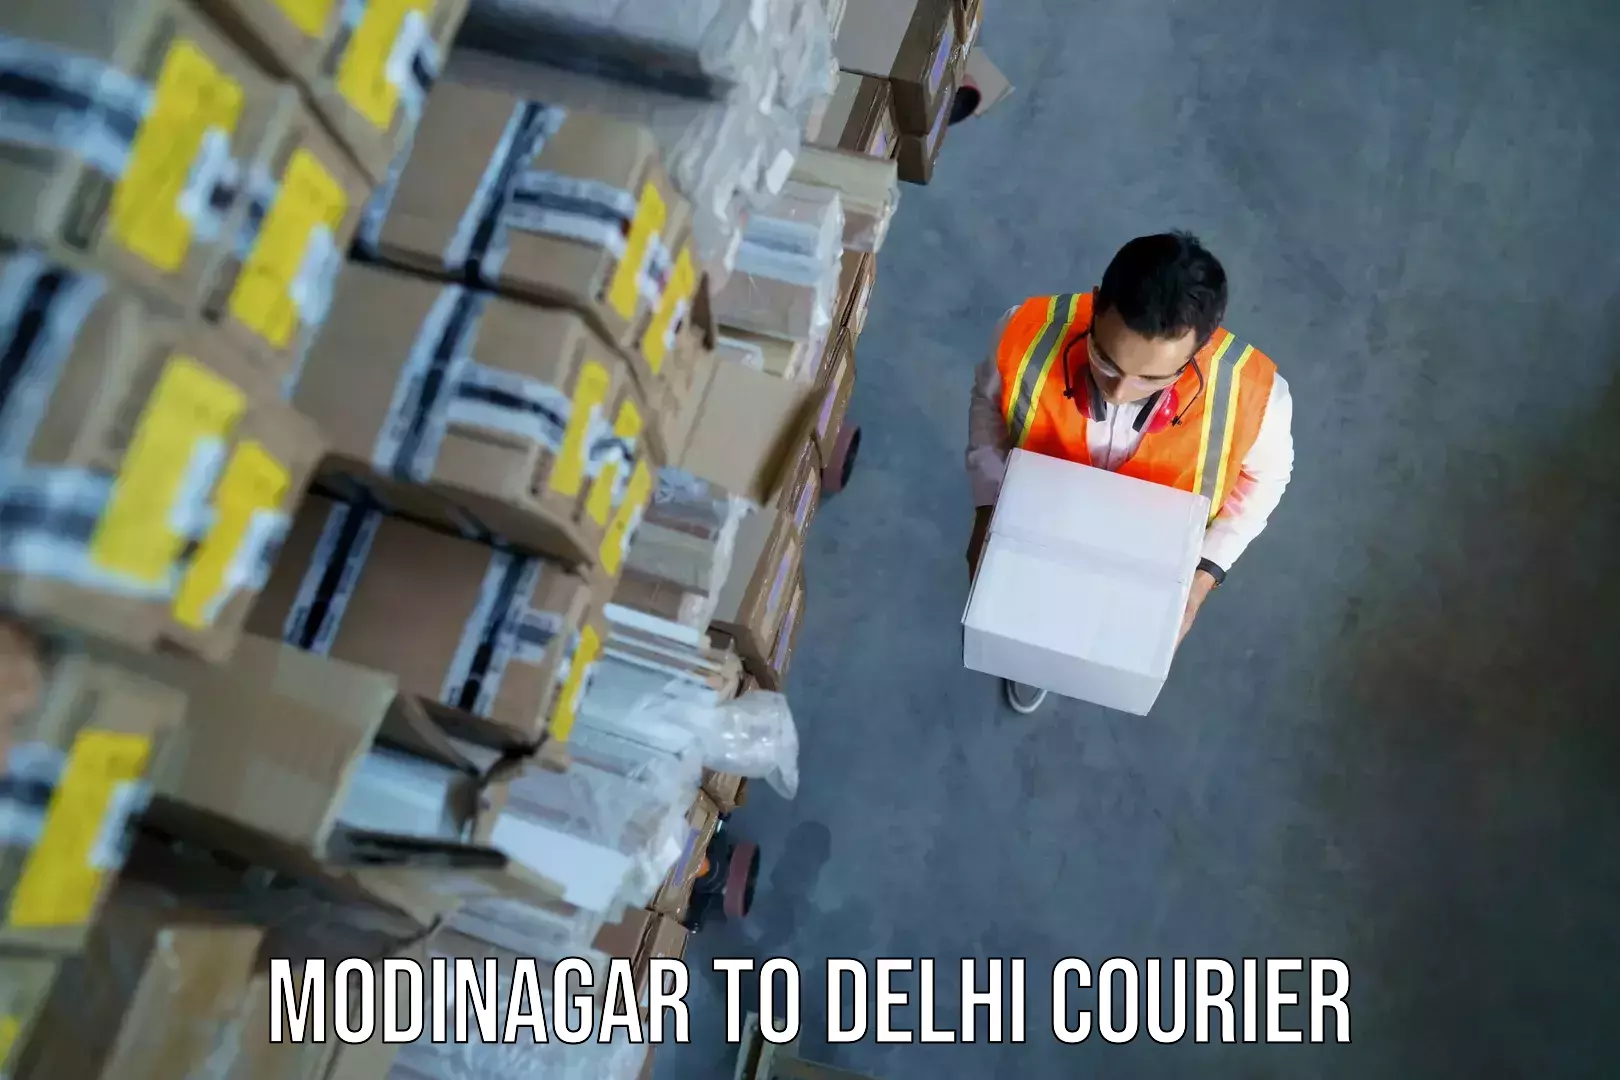 Baggage transport professionals Modinagar to Delhi